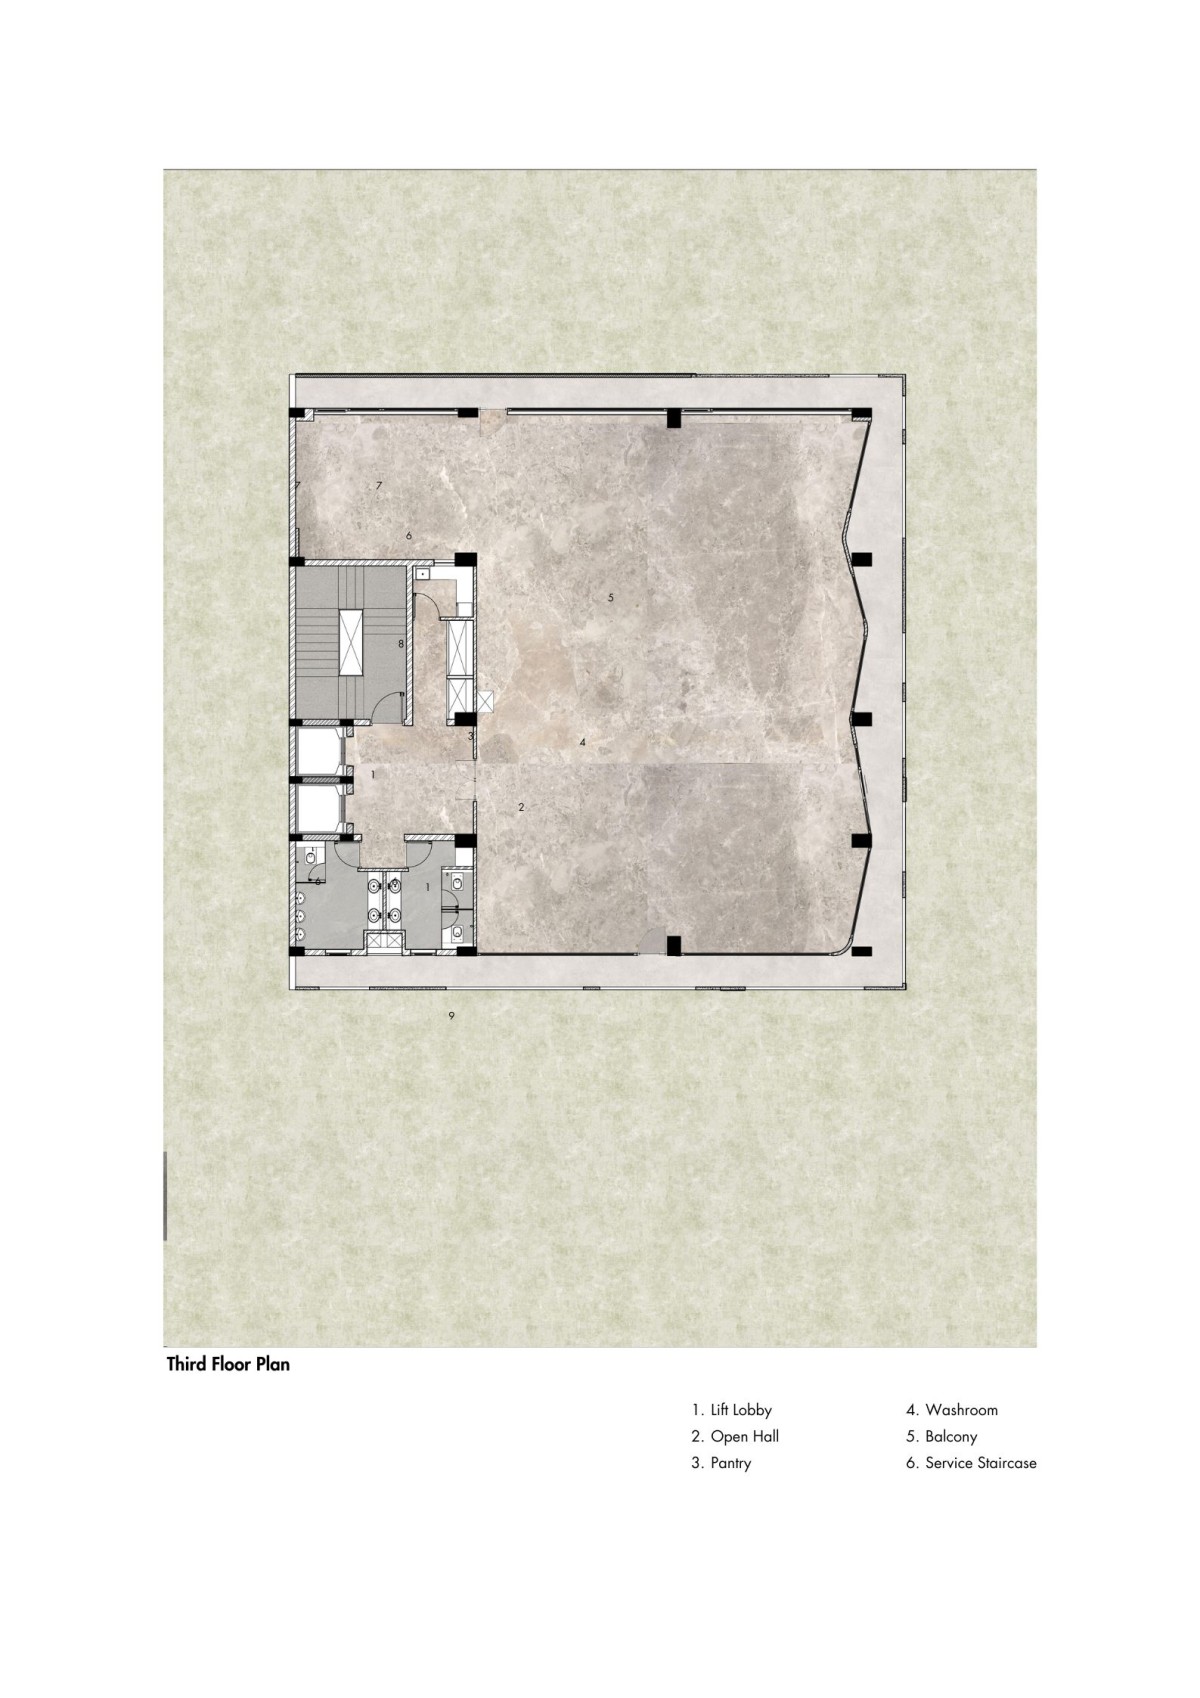 Third Floor Plan of Vornoid by Studio Ardete